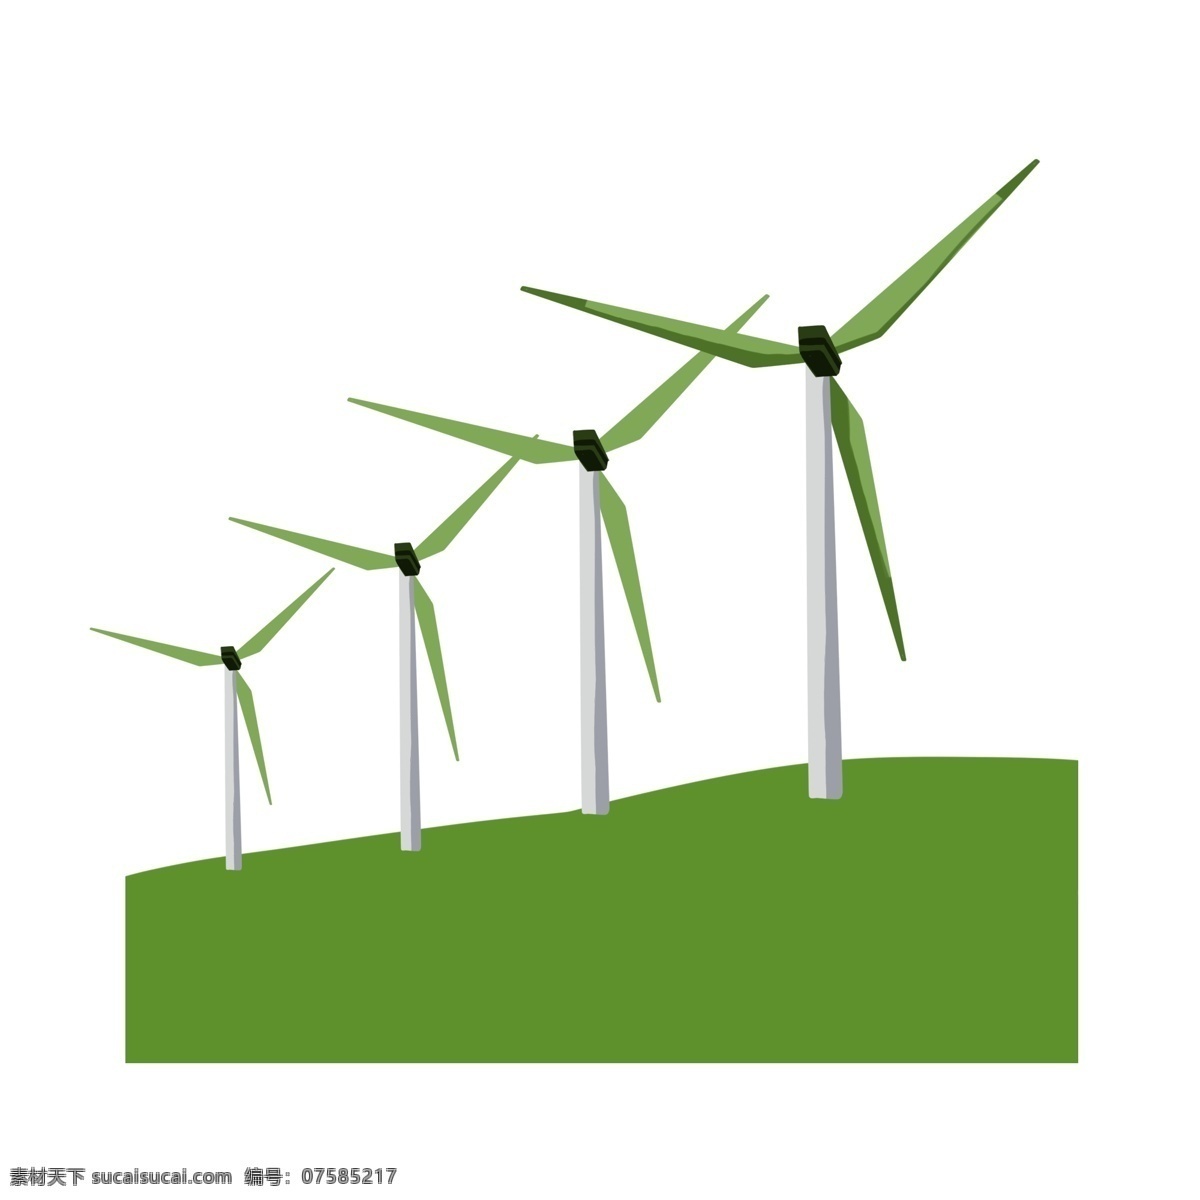 旋转 风车 环保 插画 绿色的风车 卡通插画 风车插画 风车环保 风力发电 绿色的草坪